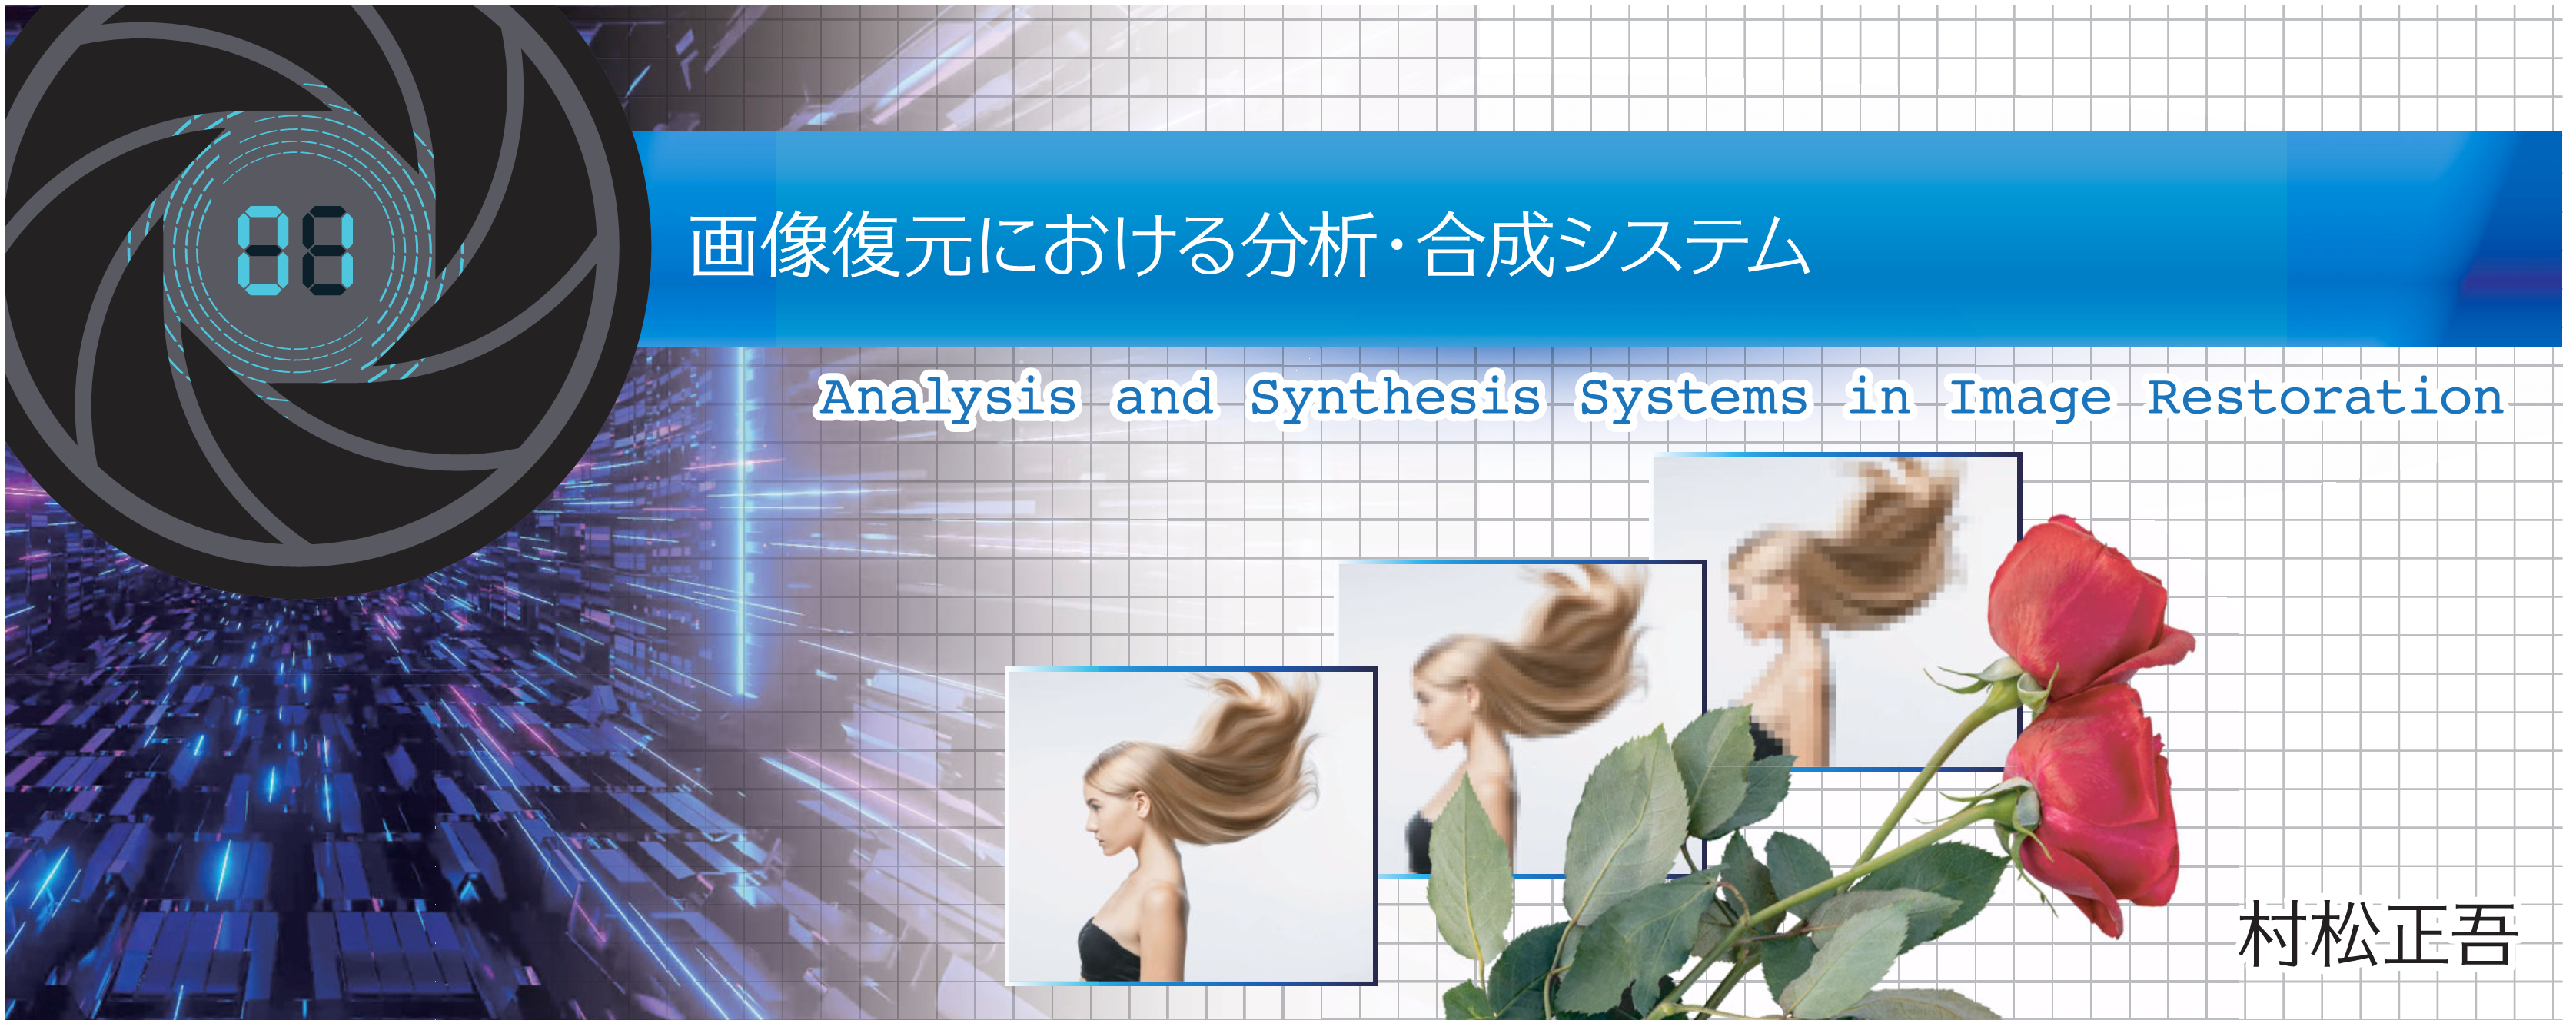 特別小特集 1. 画像復元における分析・合成システム Analysis and Synthesis Systems in Image Restoration 村松正吾